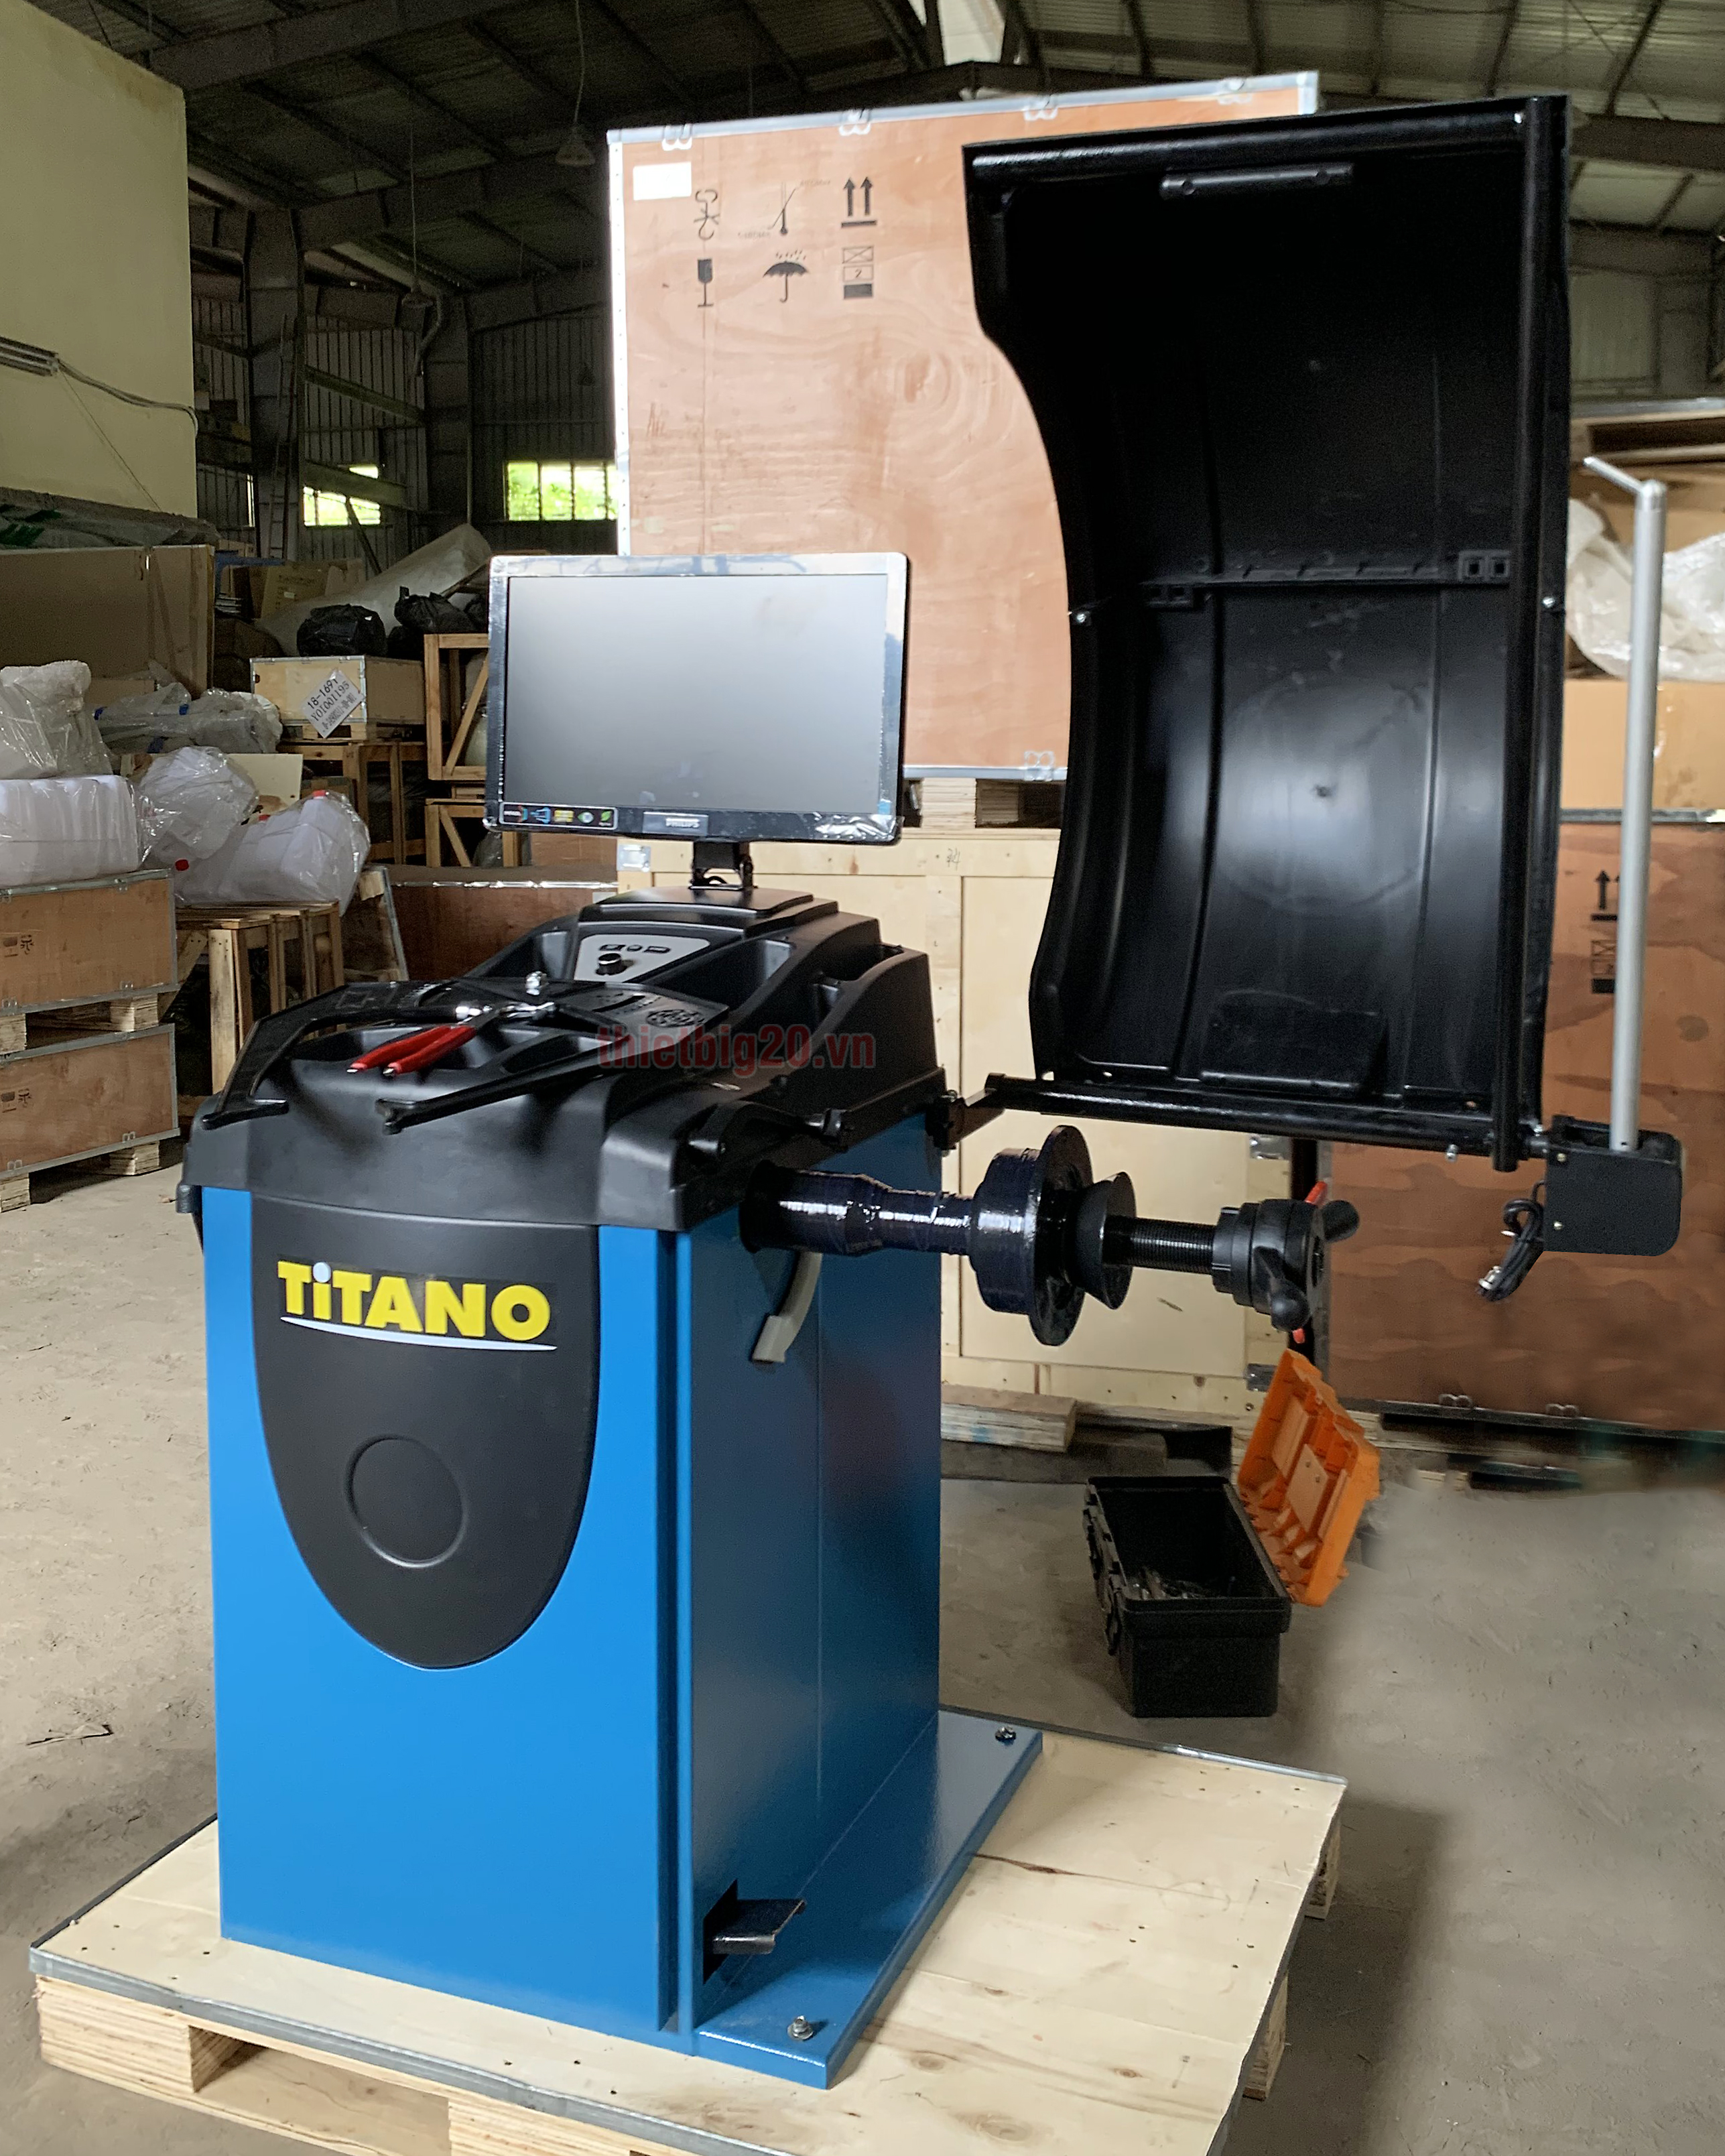 Máy cân mâm ô tô phần mềm ý Titano STD-423 - Màn LCD, Tự động 2 thông số, Tay đo bề rộng lốp